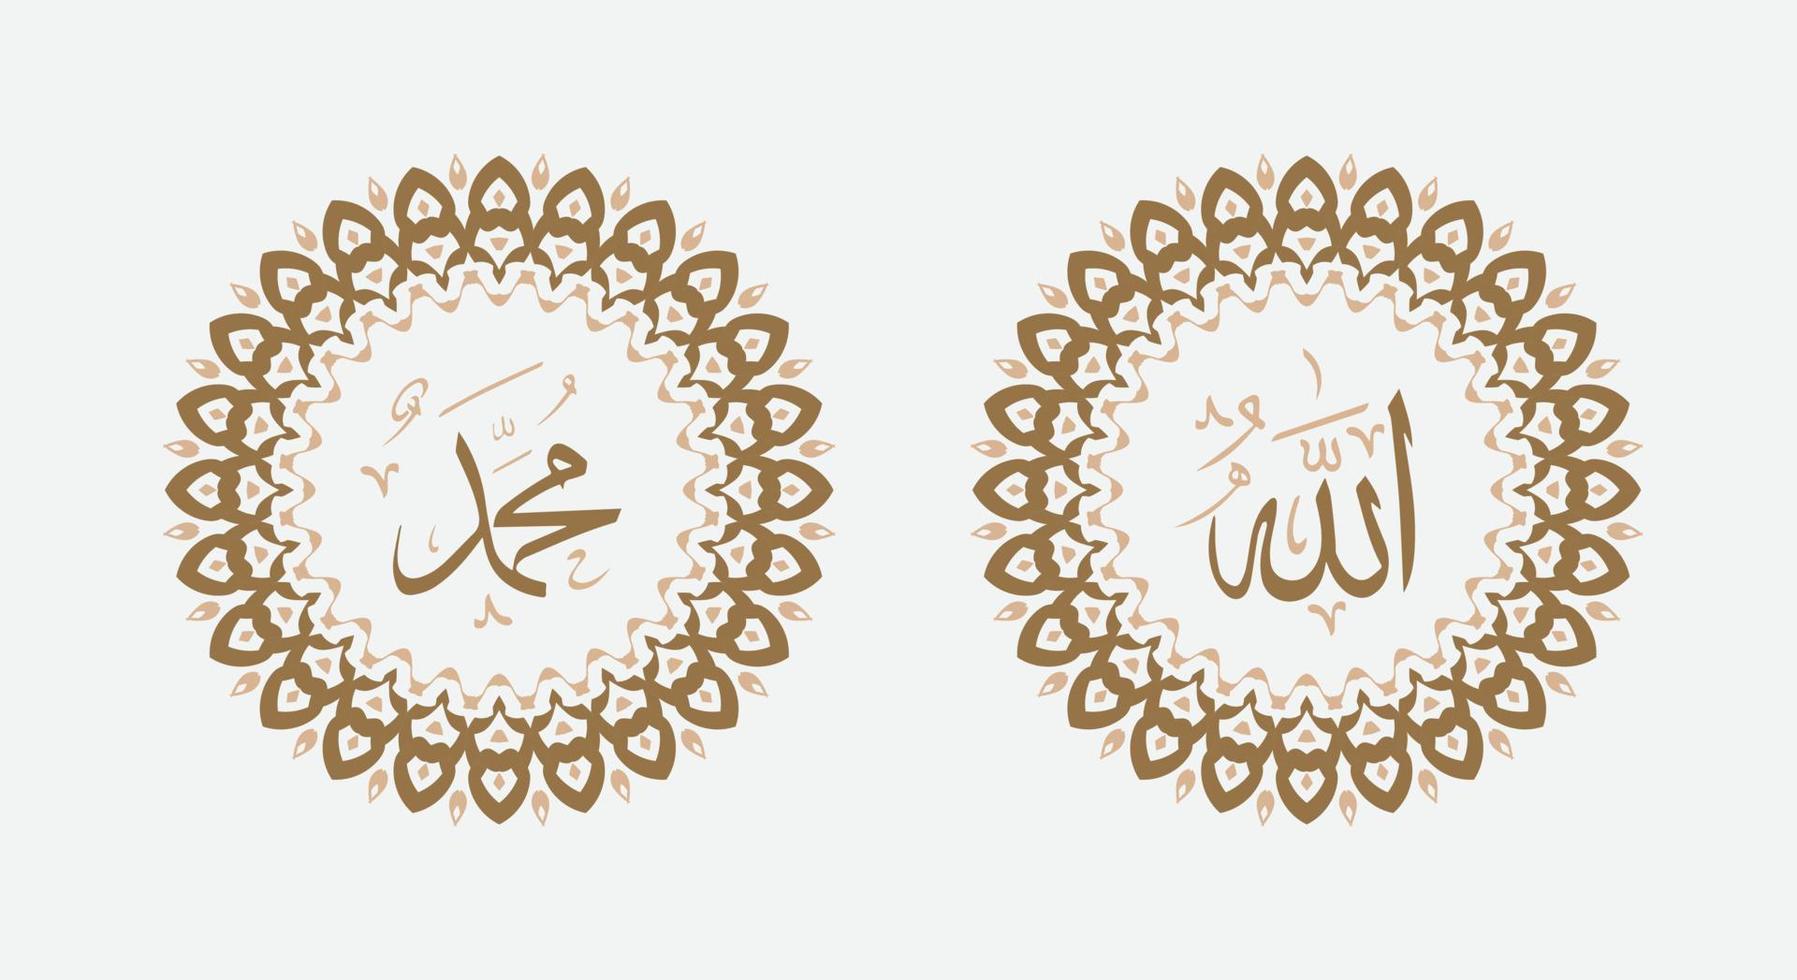 Allah Mohammed Arabisch schoonschrift met modern cirkel kader vector